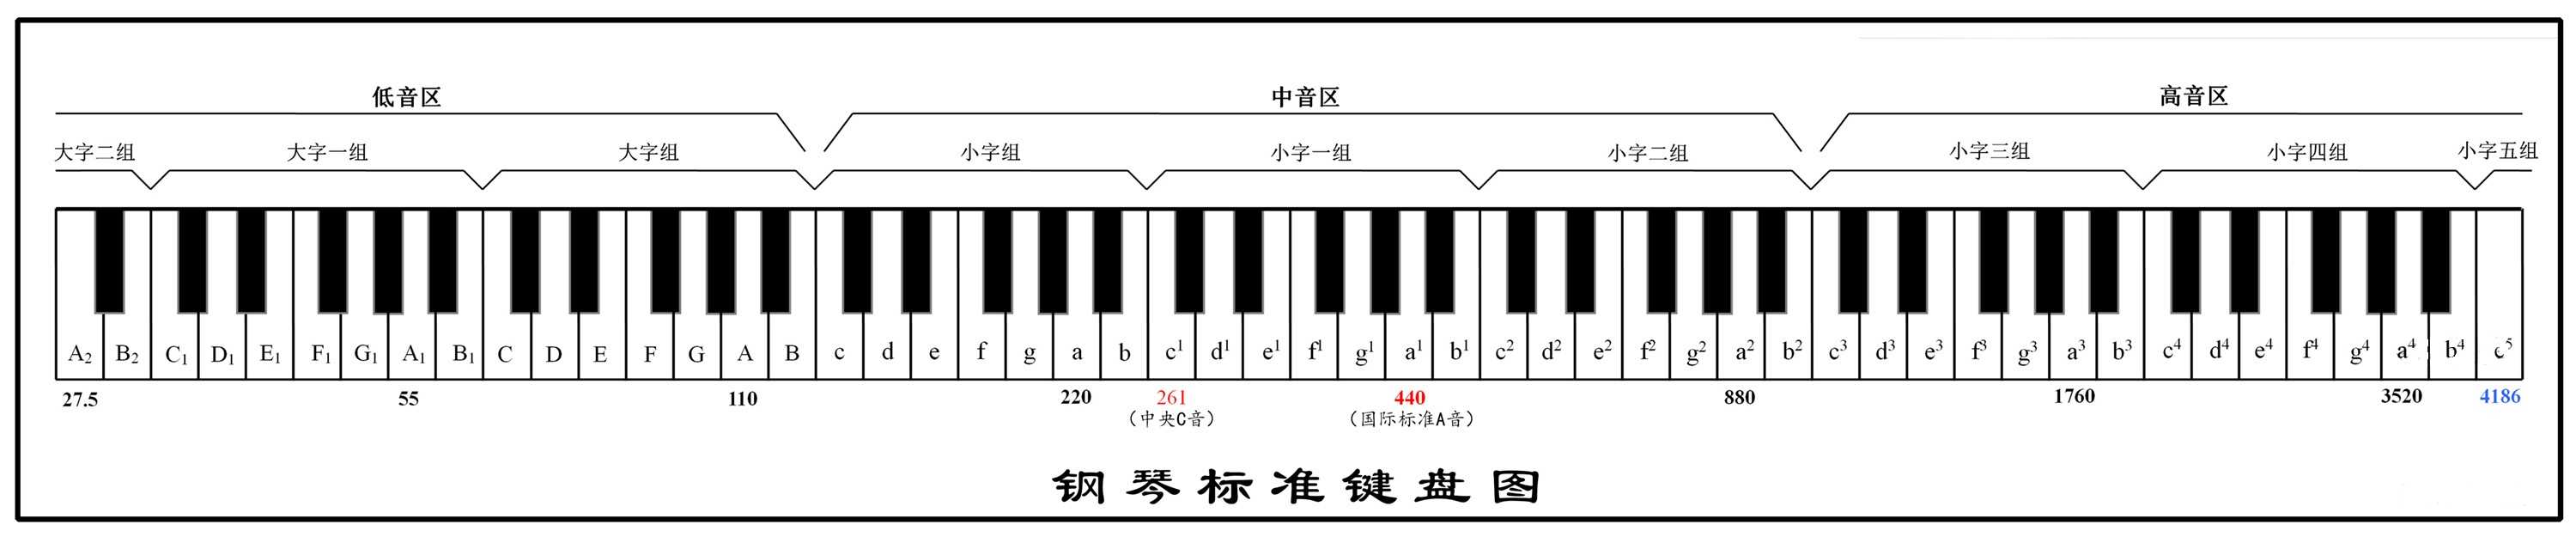 谁有钢琴键盘88键示意图？？ 那里可以找到？？？